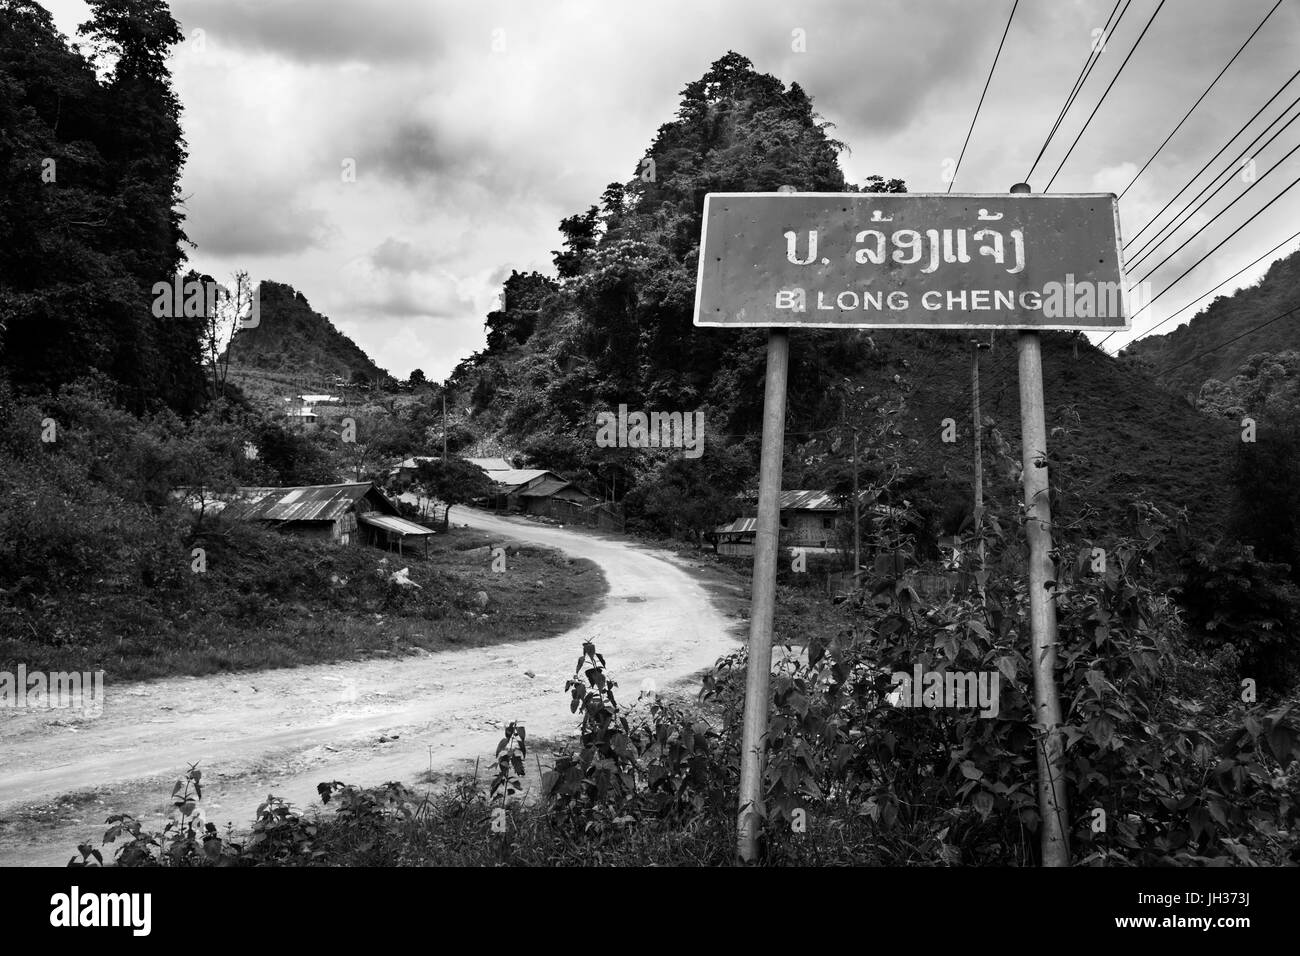 Presente il giorno Tieng, Laos, la base principale per la CIA Air America durante la Guerra del Vietnam. Una volta descritto come " il luogo più segreto sulla terra " Foto Stock